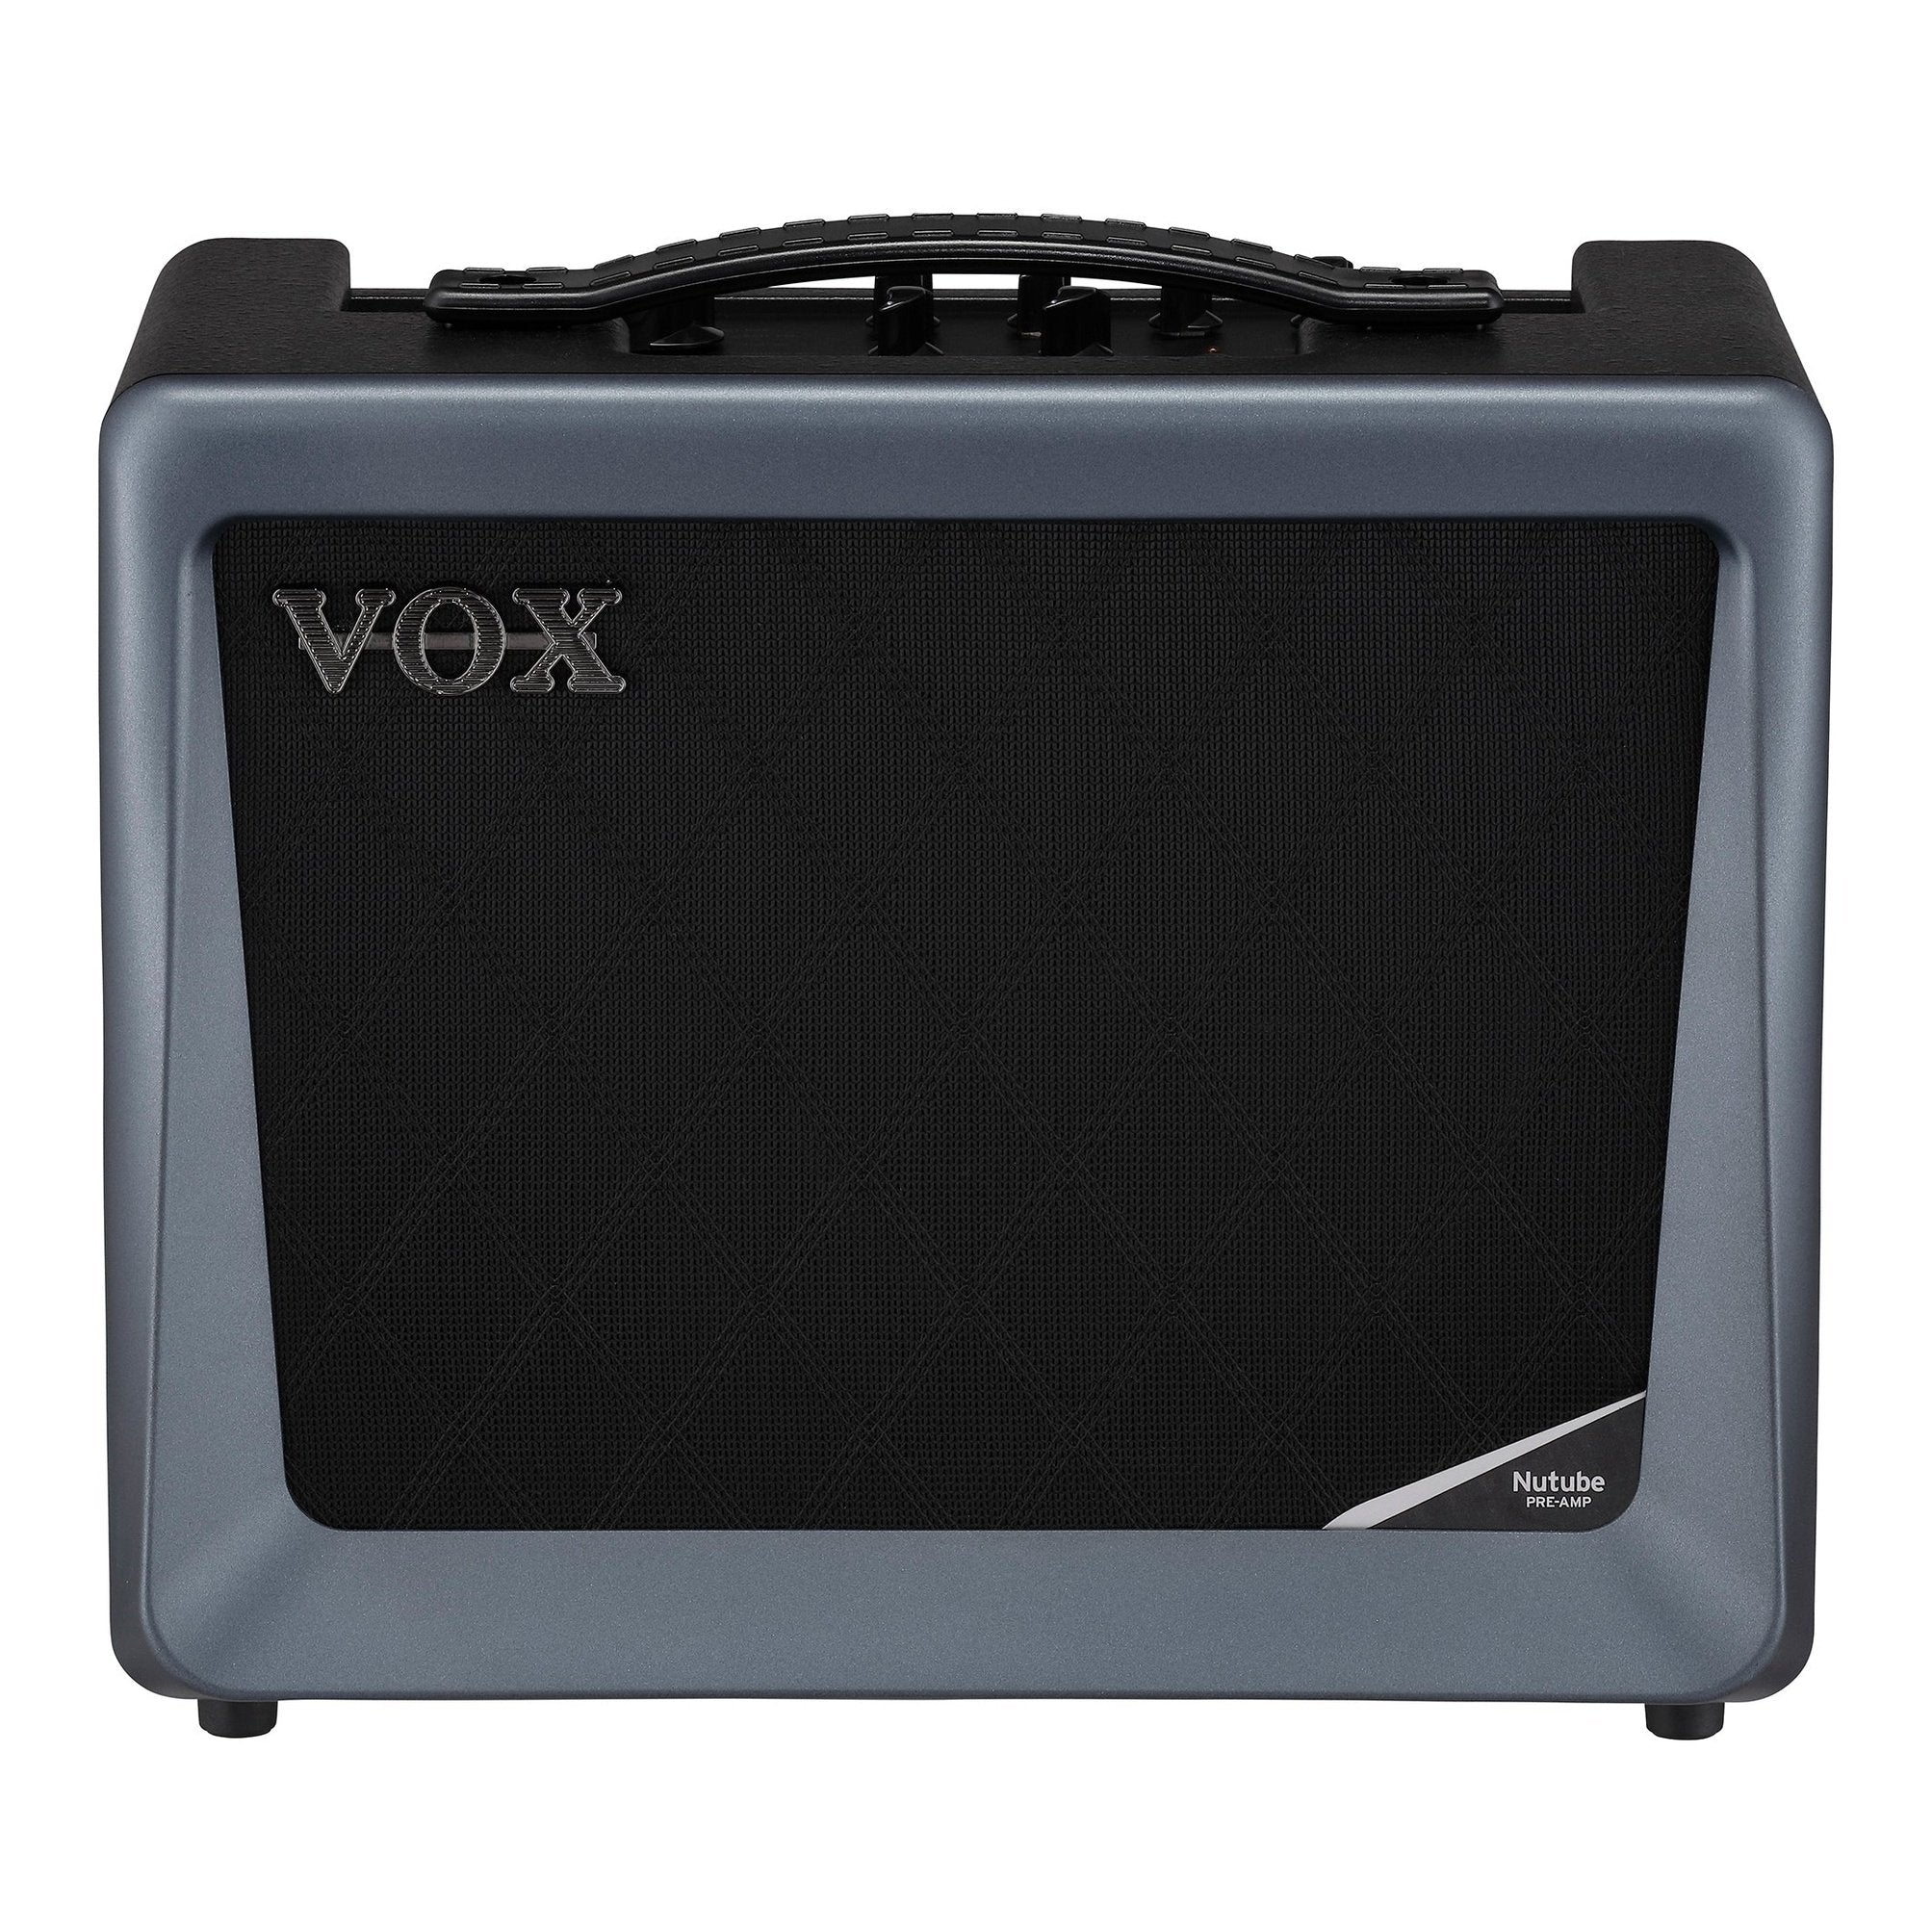 Vox VX50 Nutube Amp 1